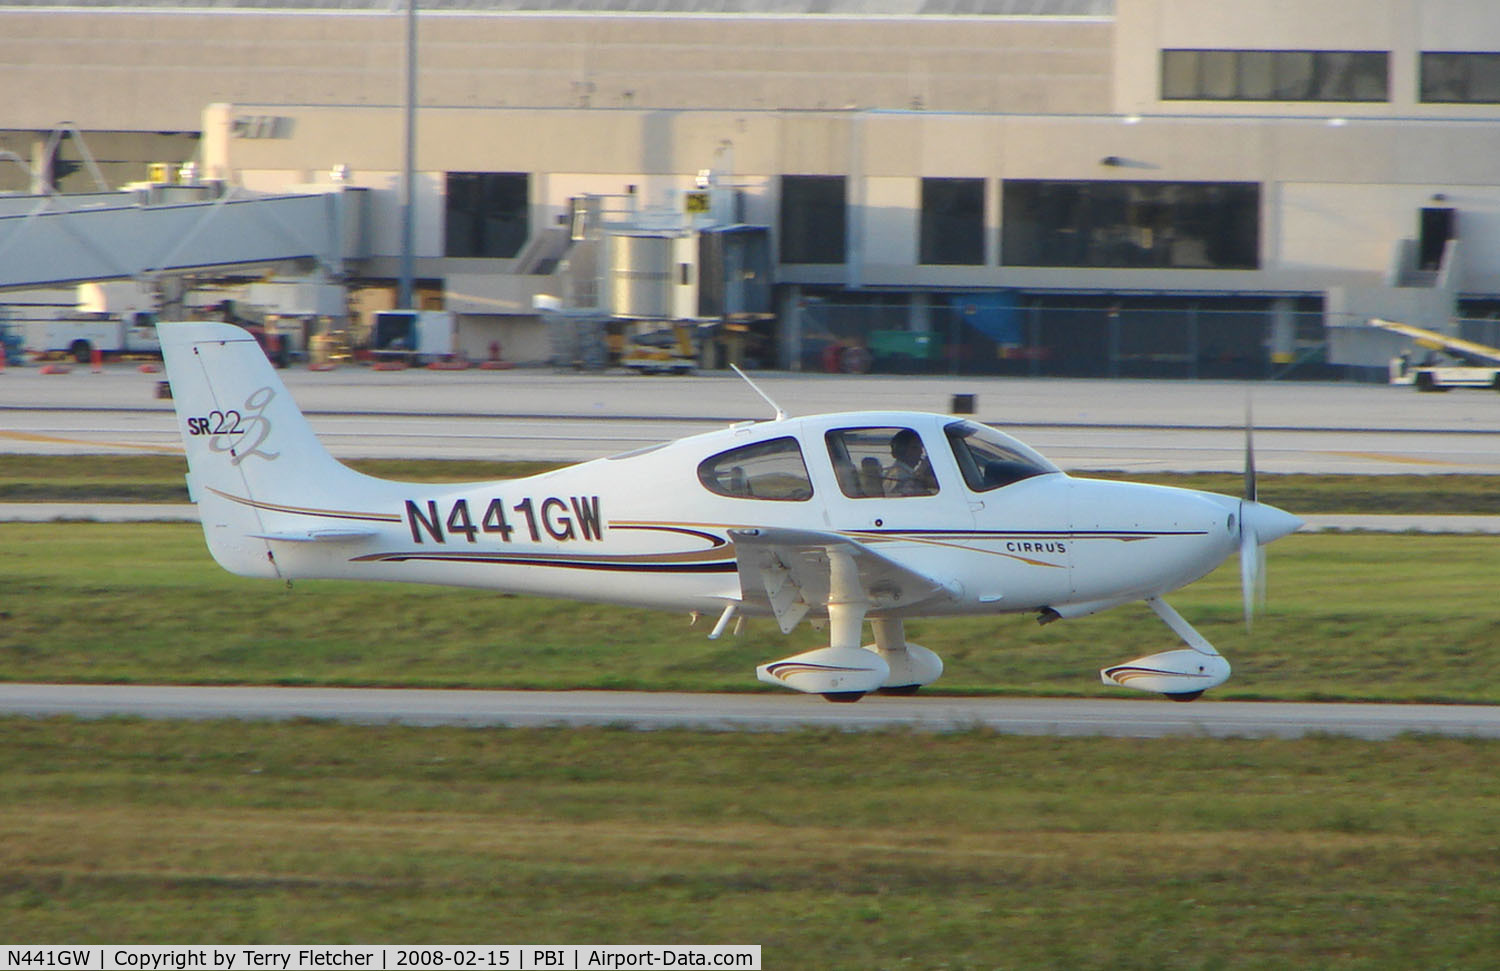 N441GW, 2004 Cirrus SR22 G2 C/N 1060, Cirrus SR22 at West Palm Beach